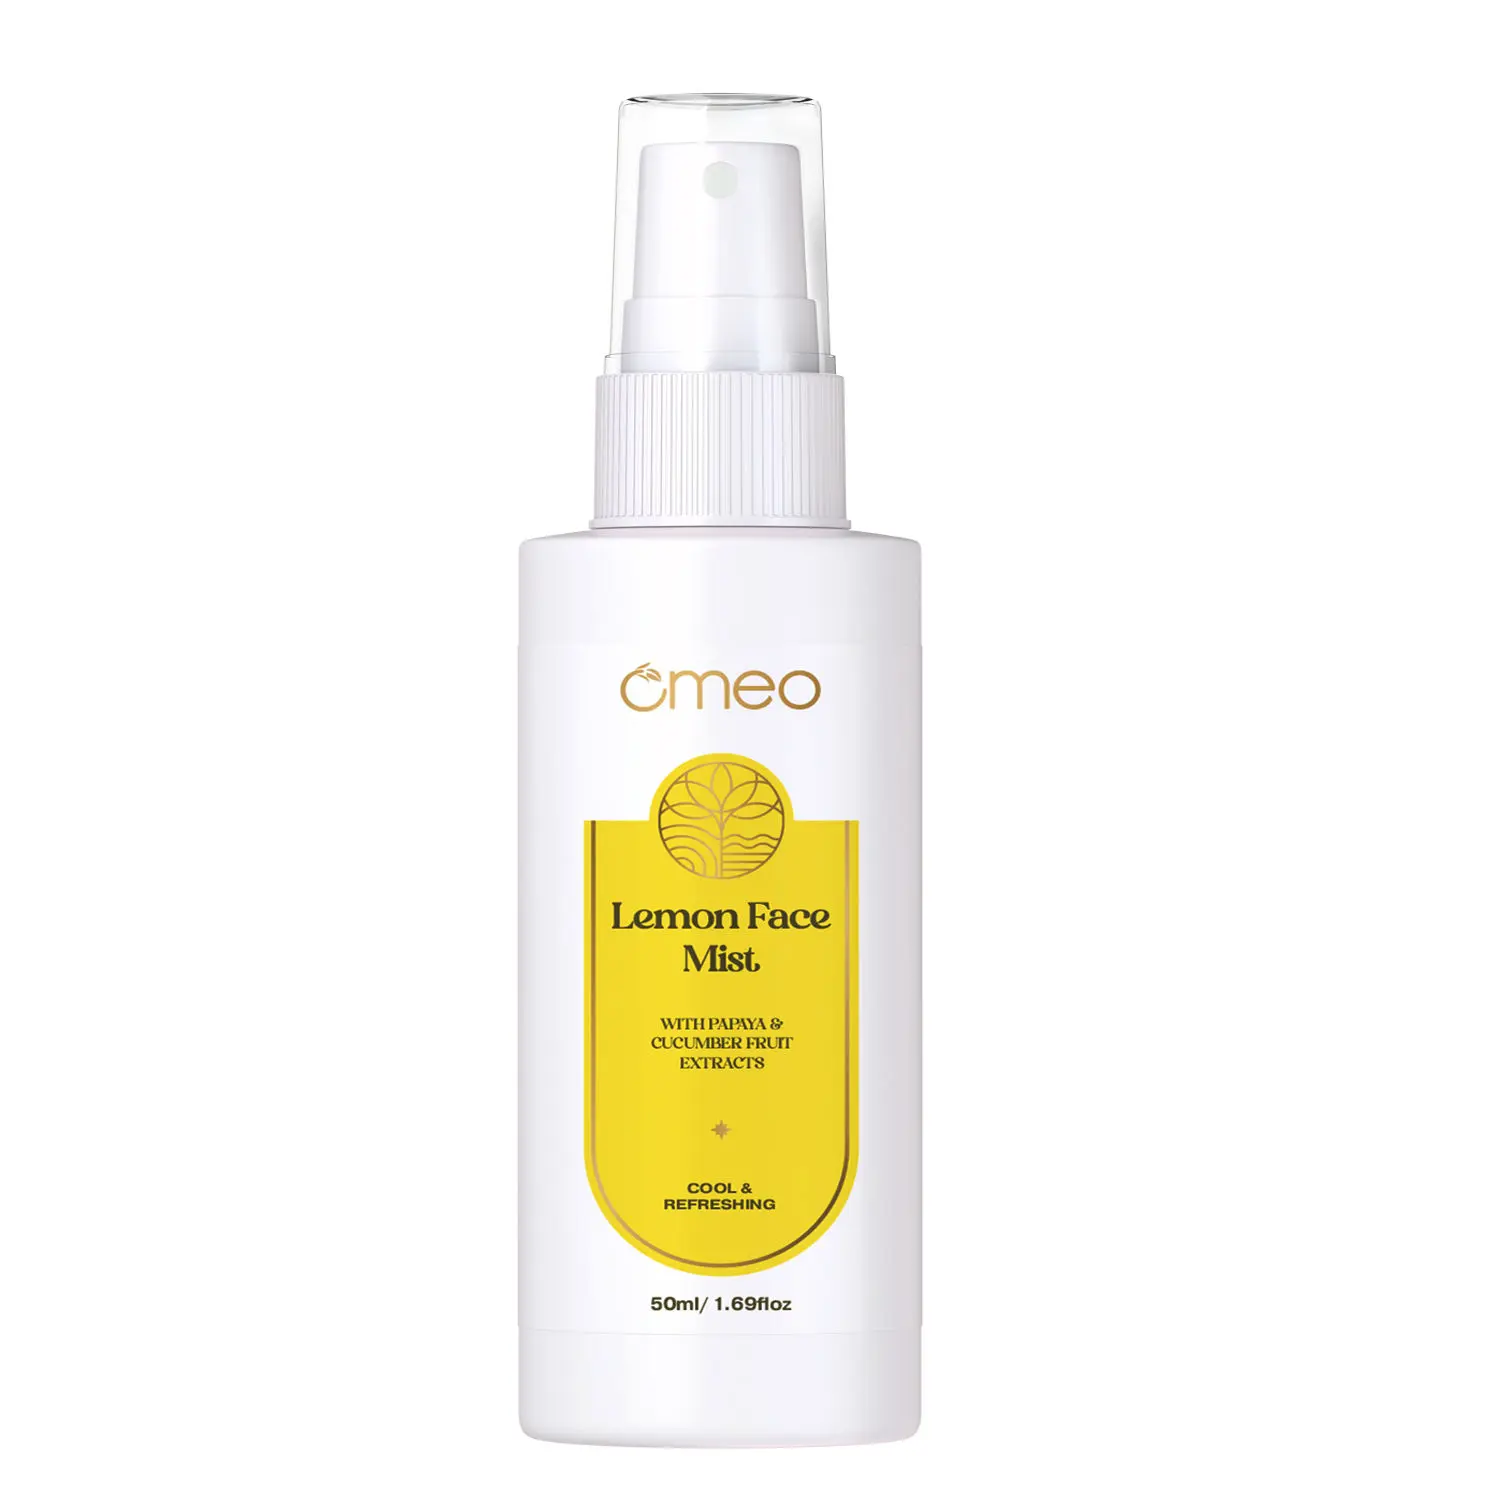 Omeo Lemon Face Mist/Toner-50ml for Glowing Skin, Hydration & Make-up Men & Women